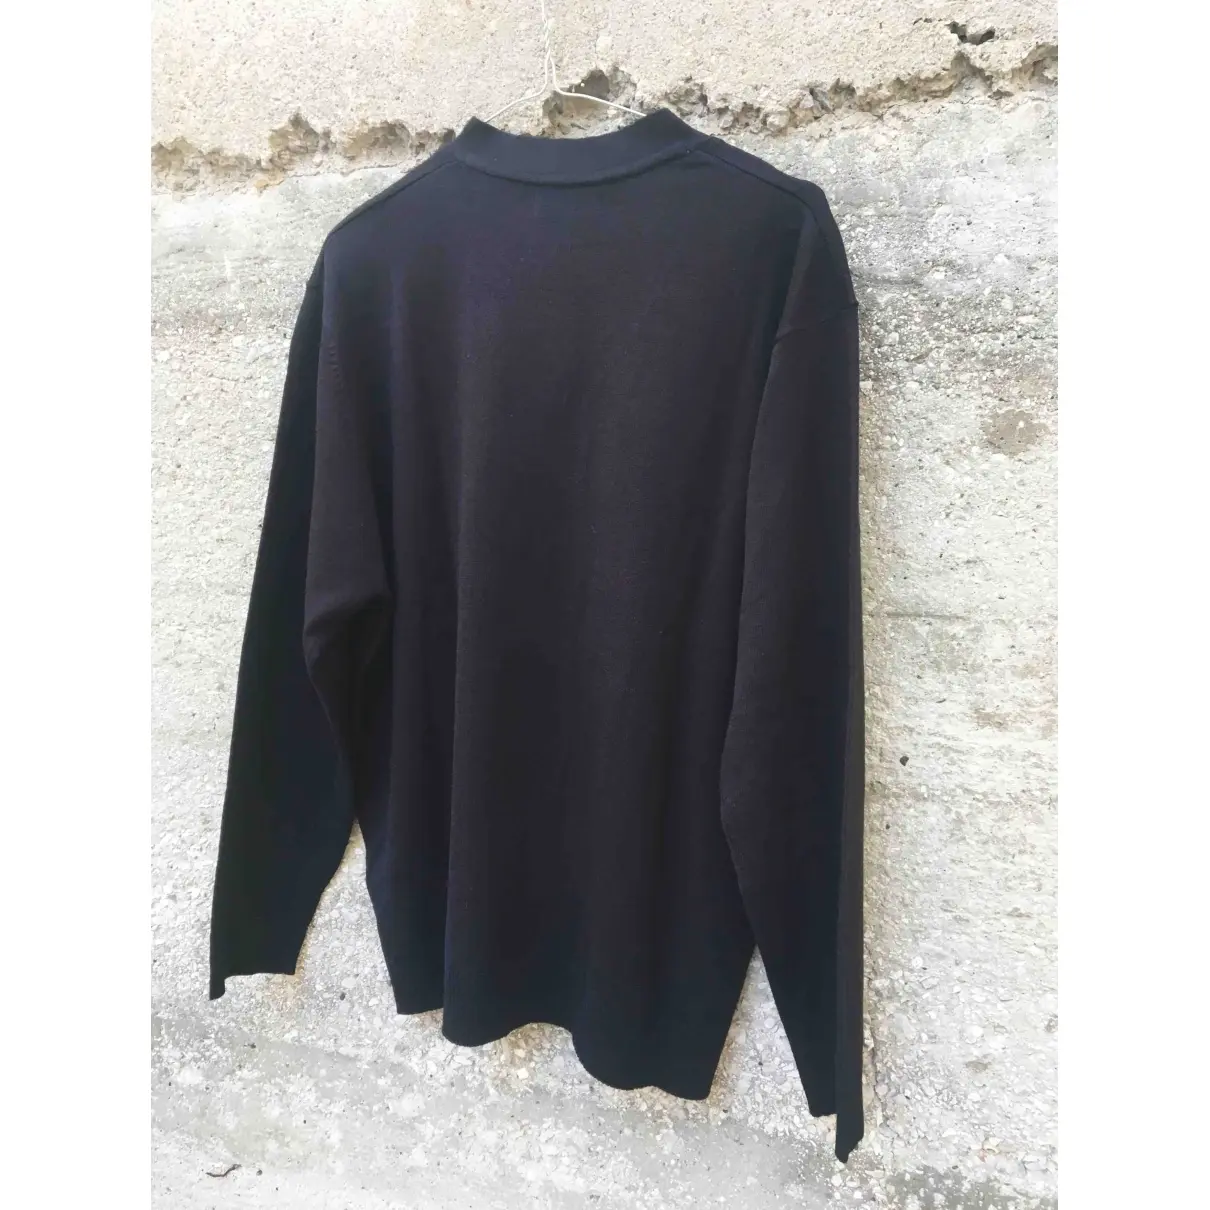 Pierre Cardin Knitwear & sweatshirt for sale - Vintage